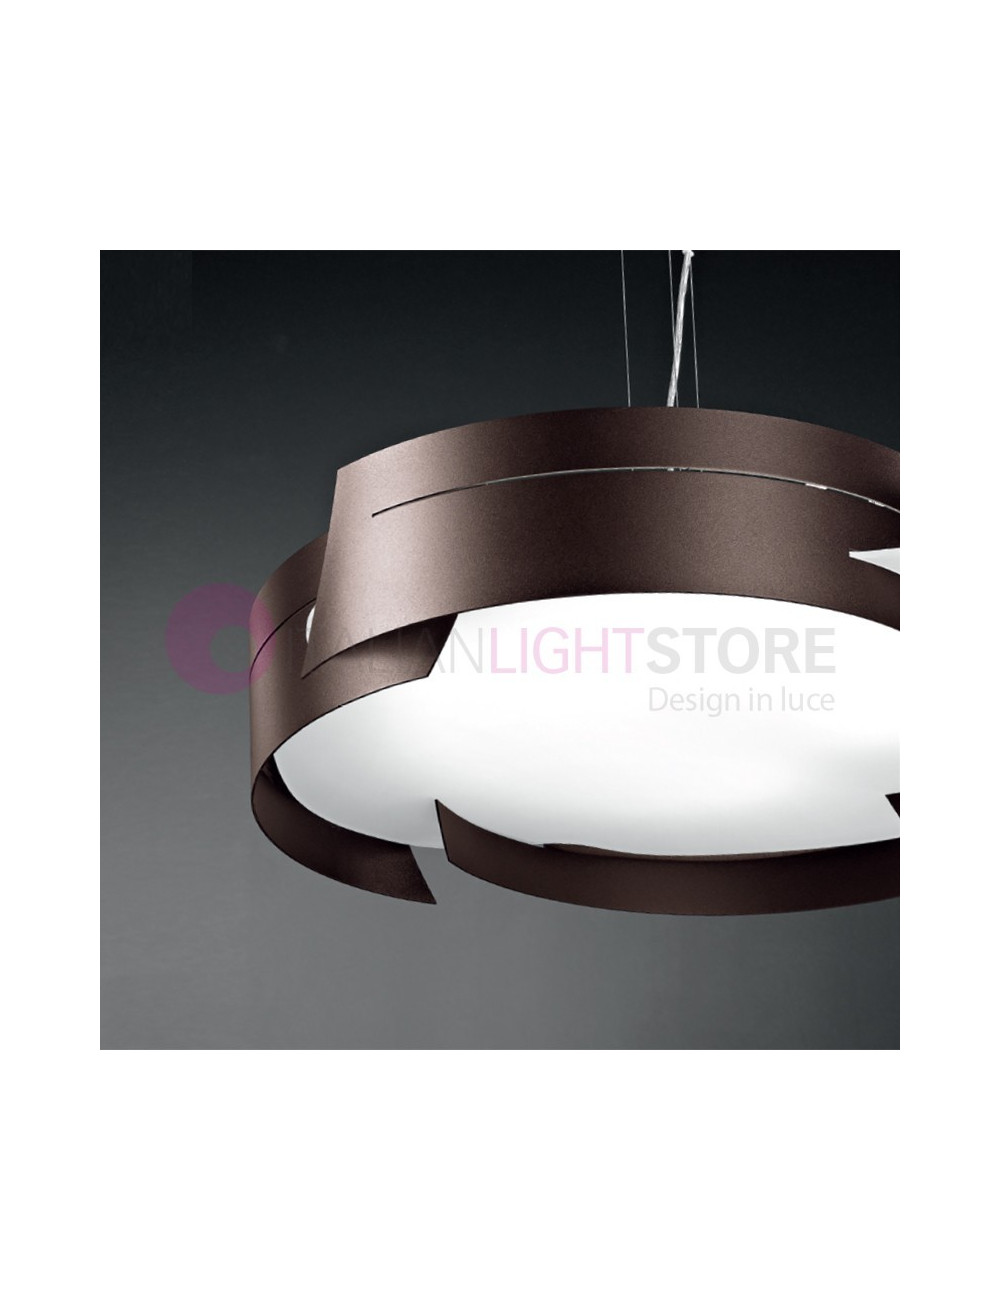 VULTUR Pendant Kitchen Lamp D.59,5 Modern Design | Selene